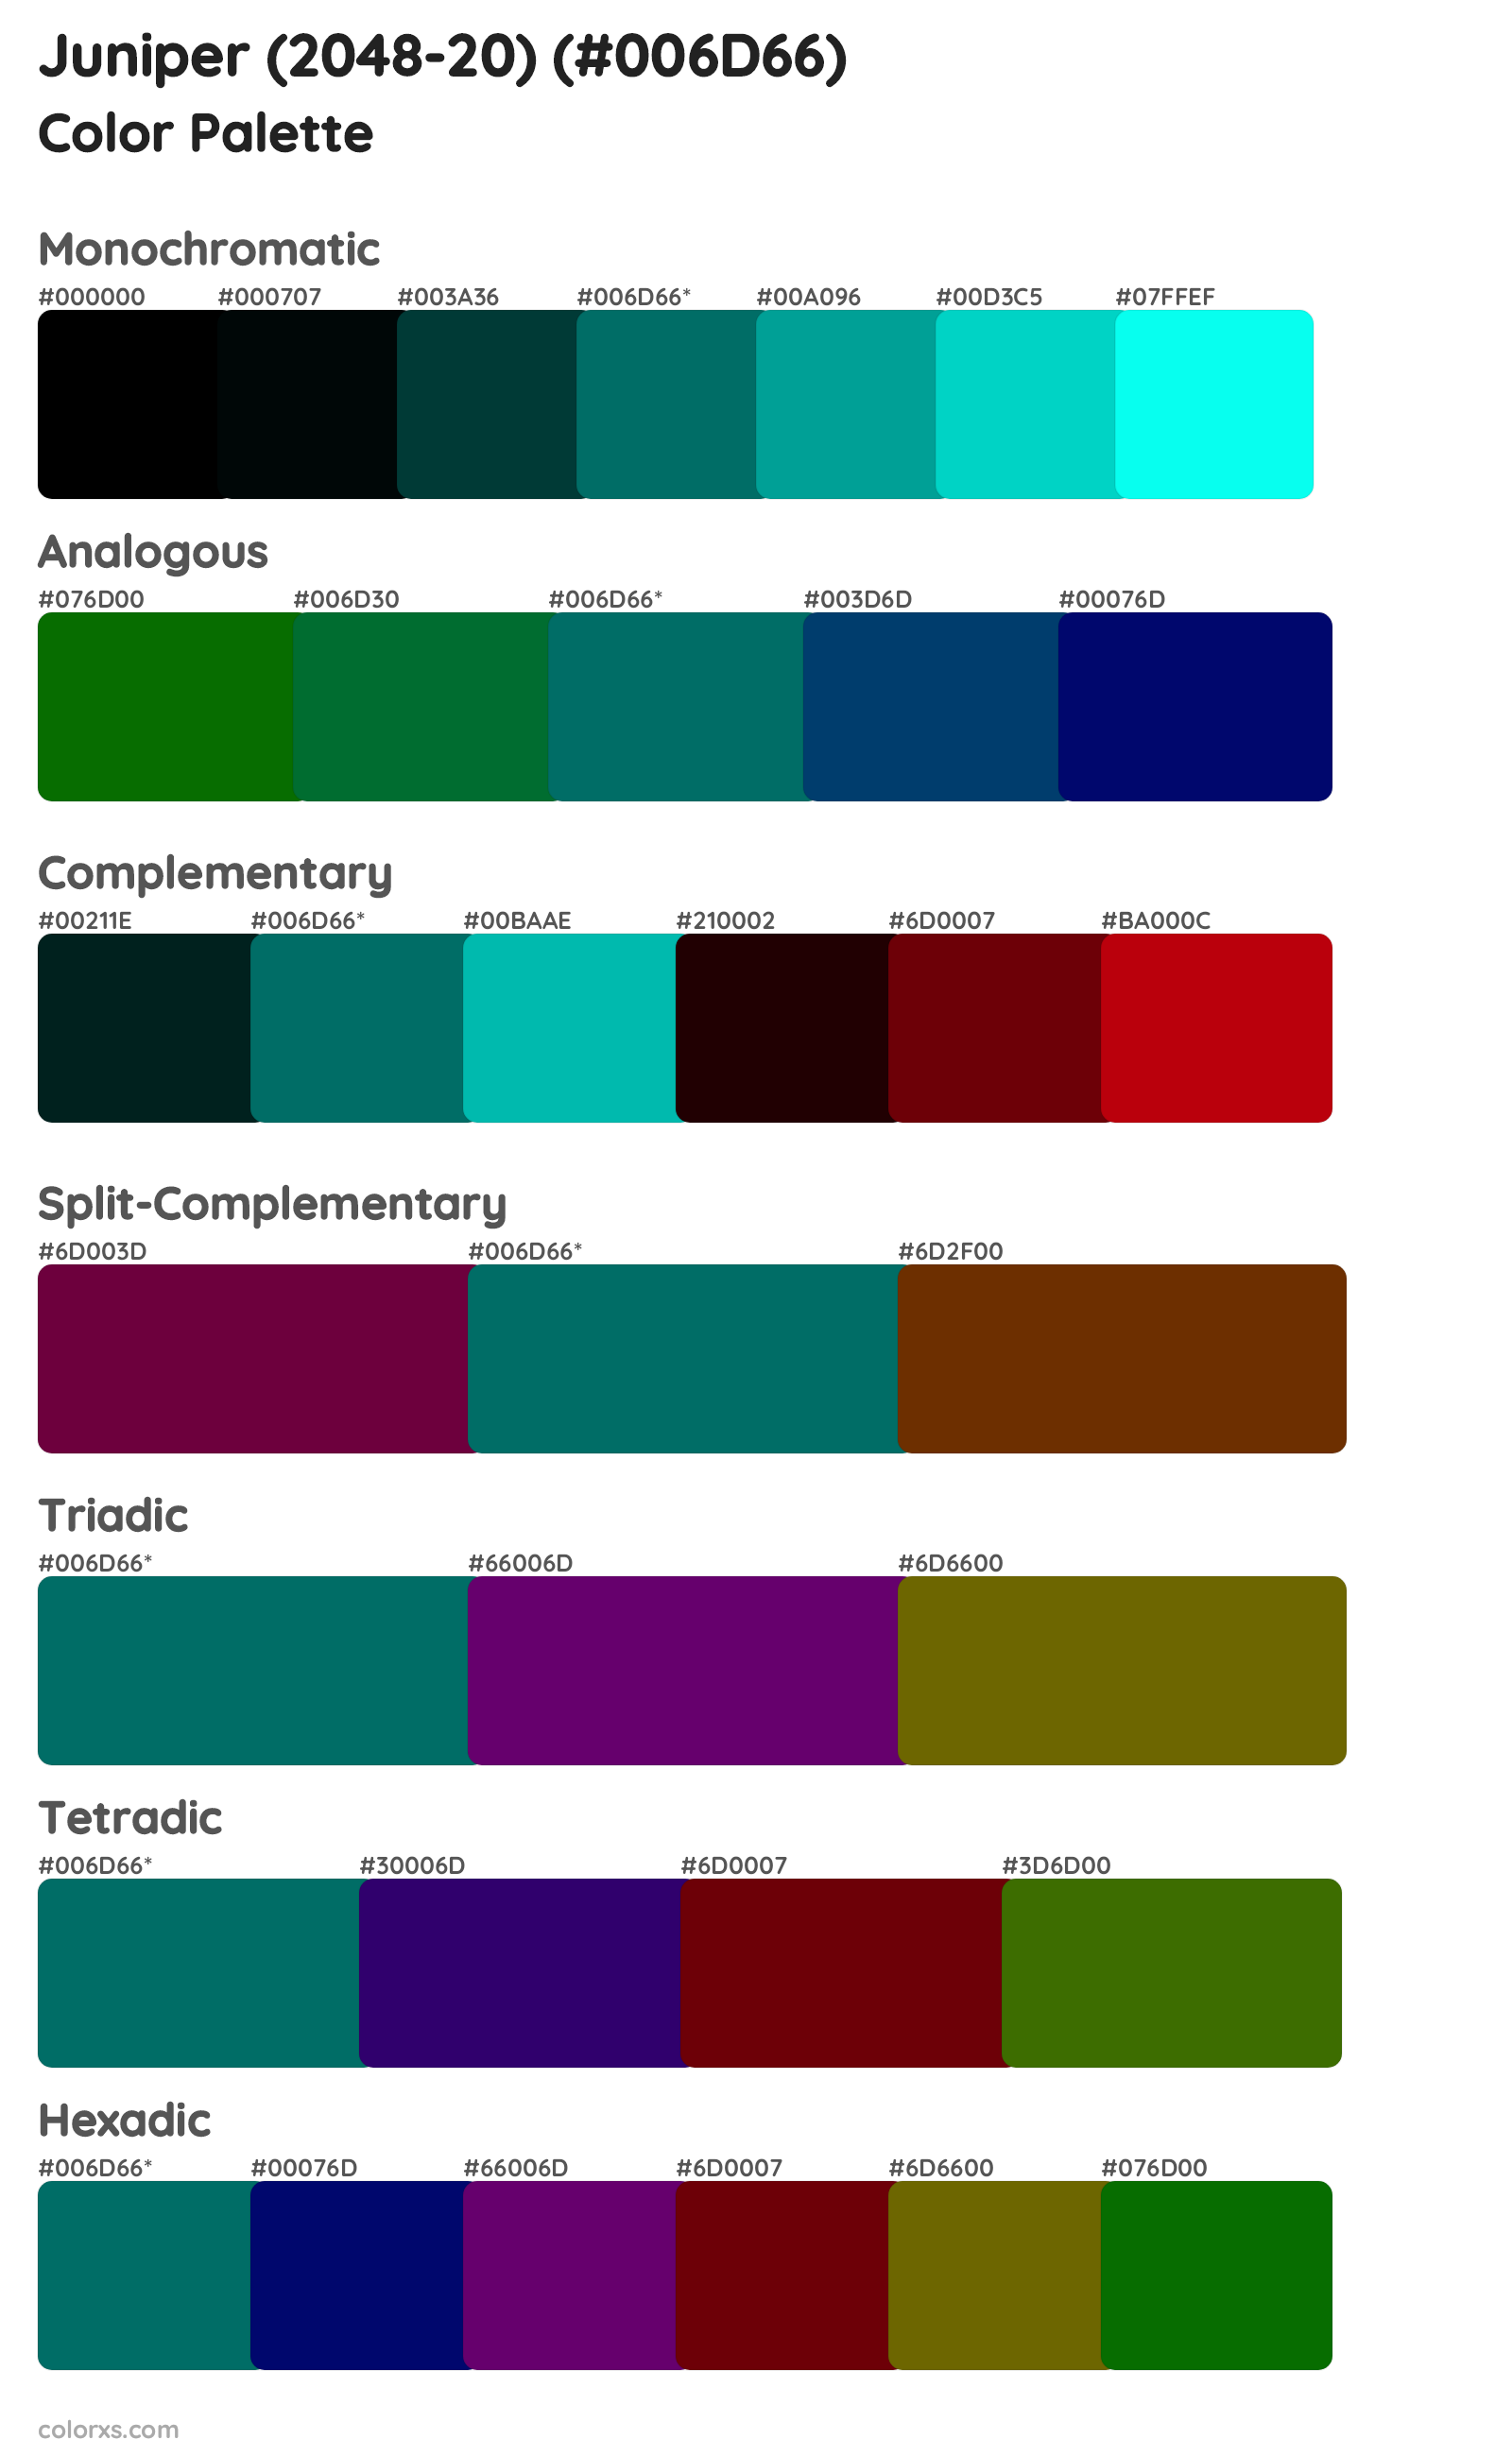 Juniper (2048-20) Color Scheme Palettes